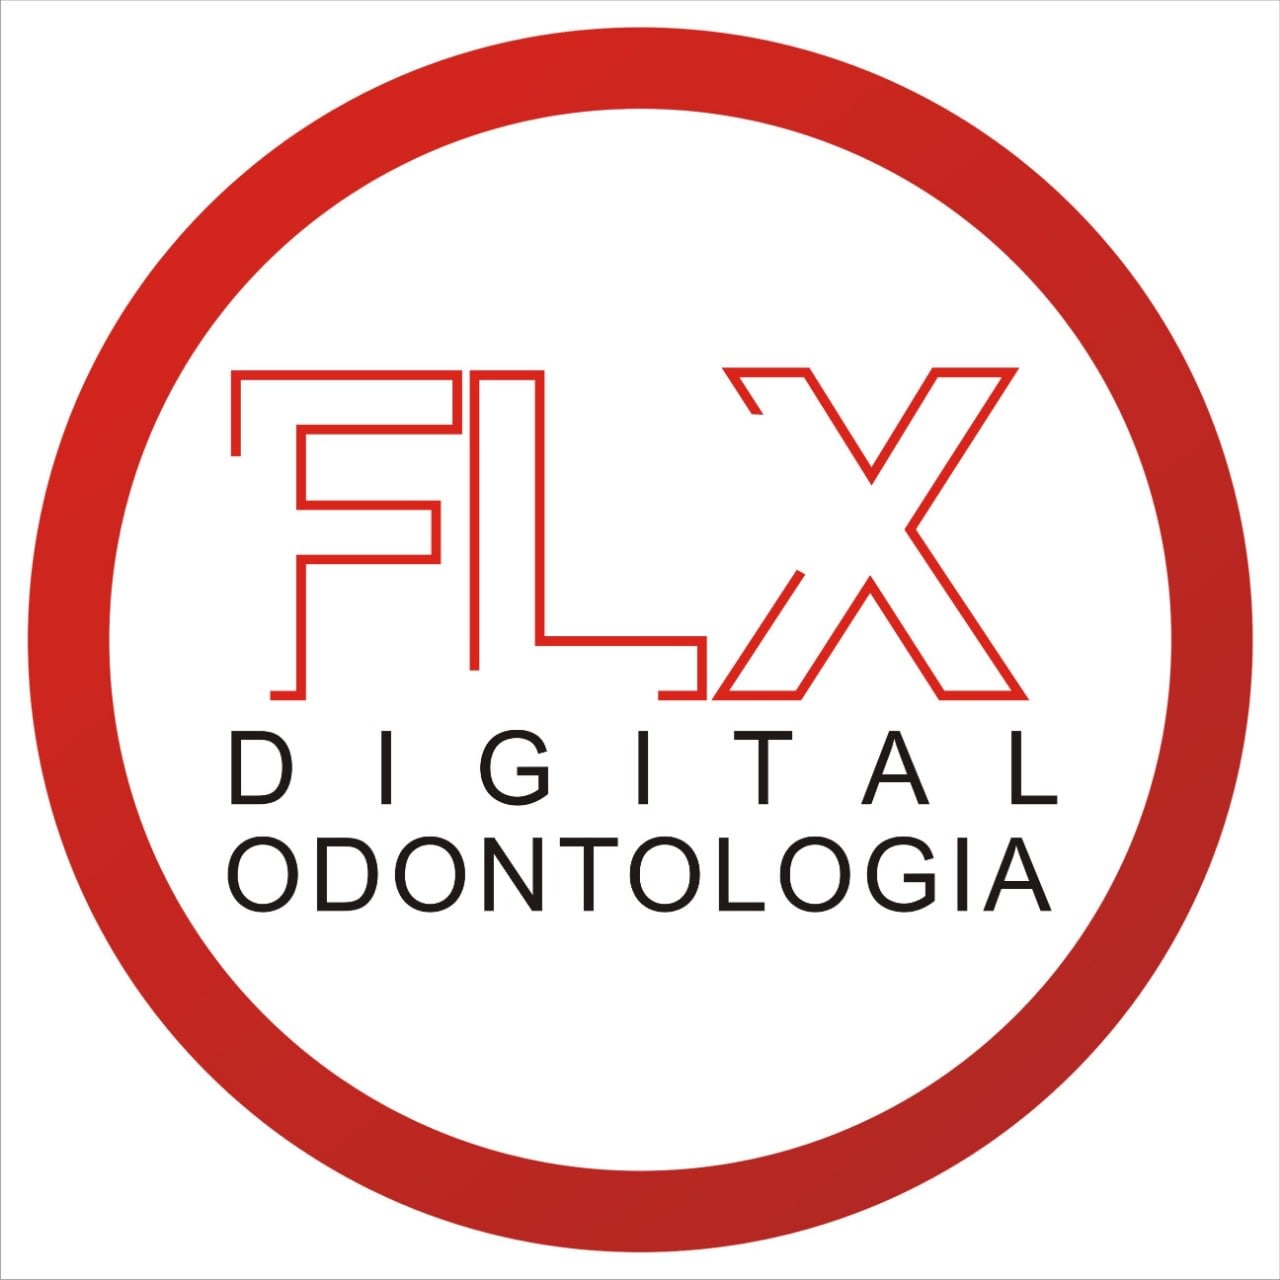 Flx Digital em Odontologia